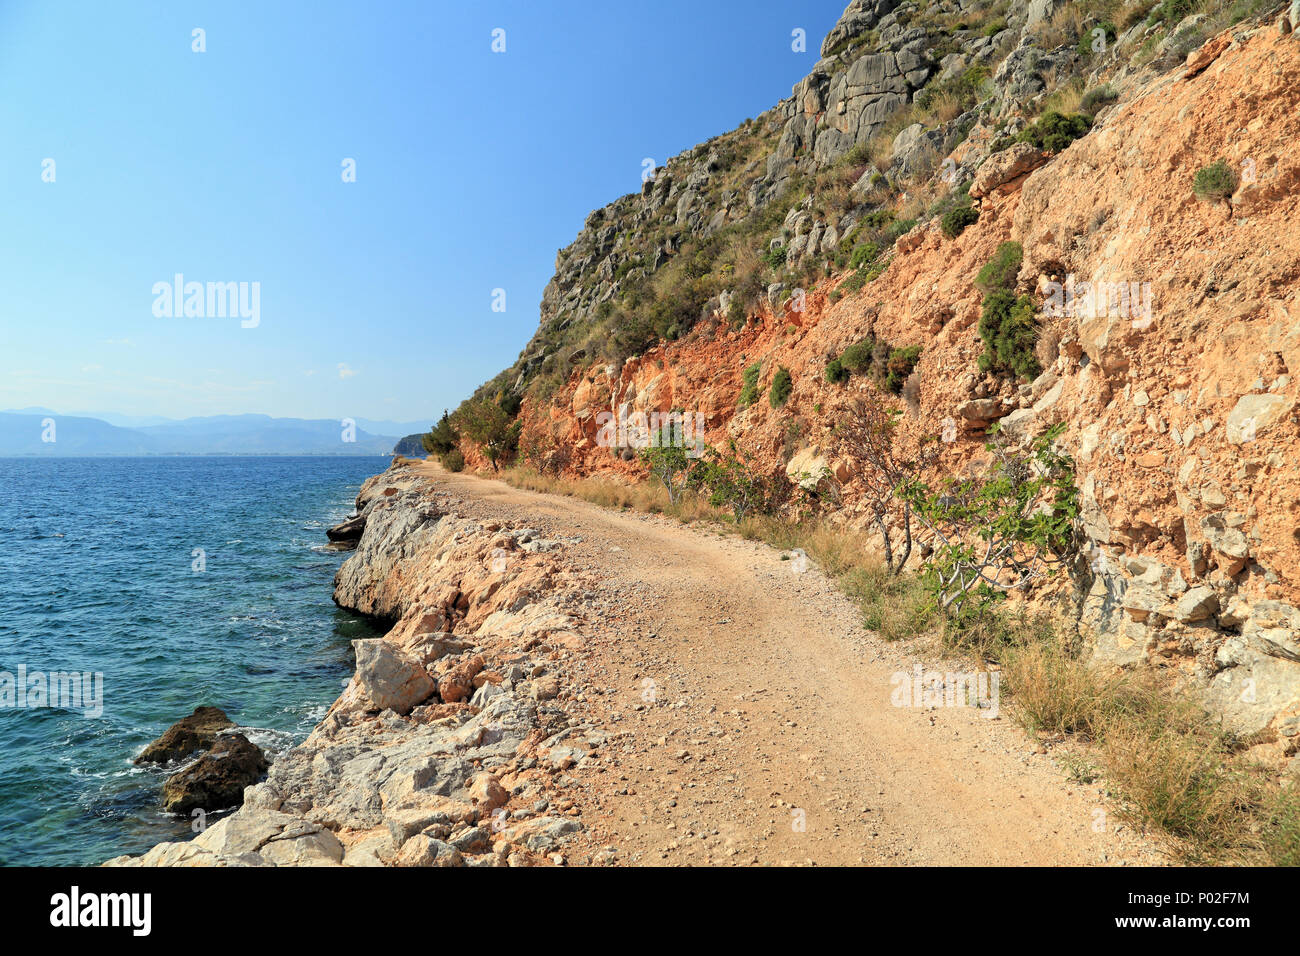 Recorrido de la costa desde Nafplio a Karathona beach Foto de stock